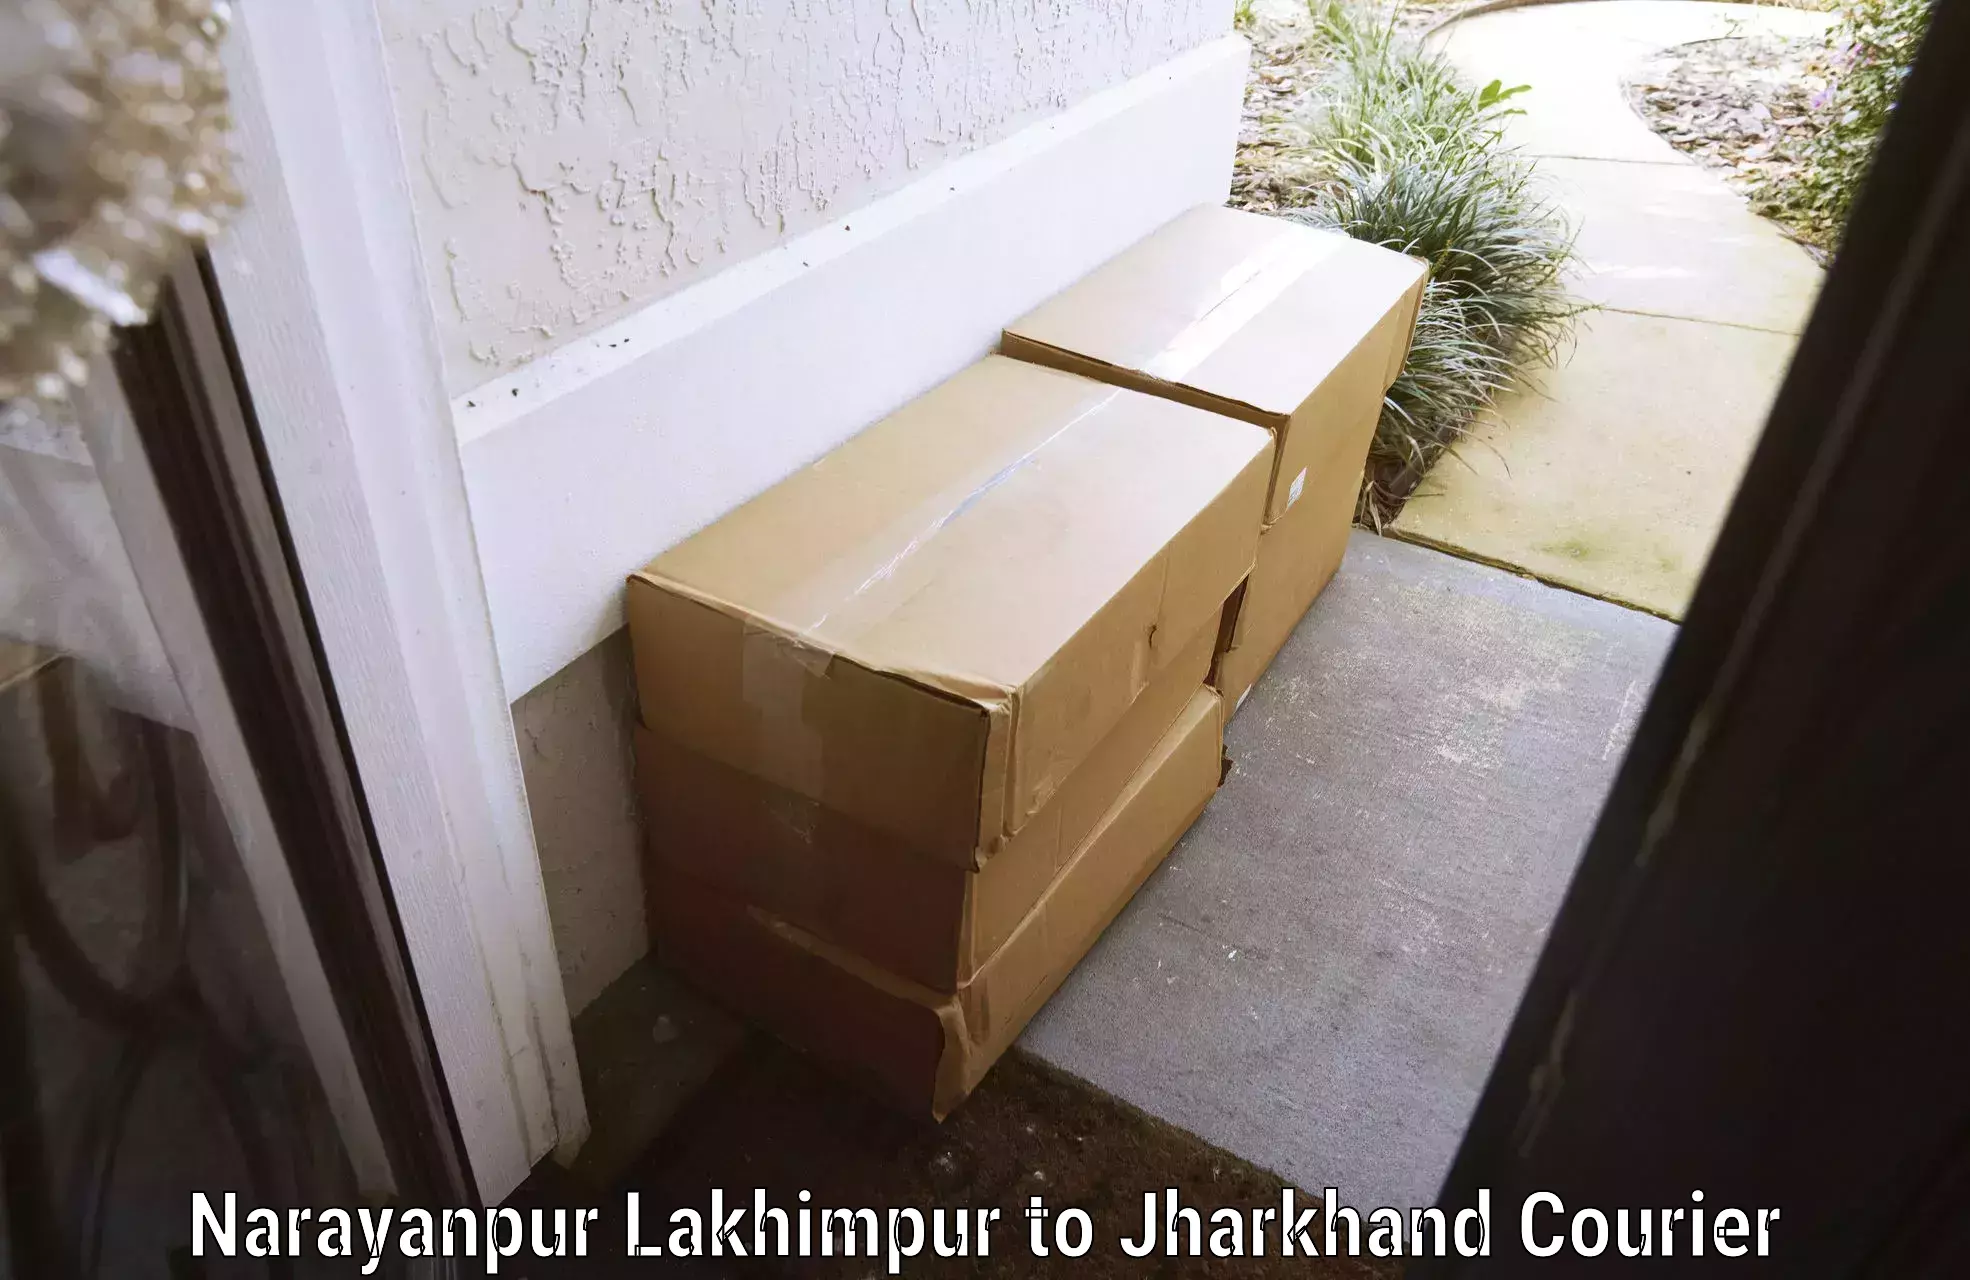 Luggage transport consultancy Narayanpur Lakhimpur to Satbarwa